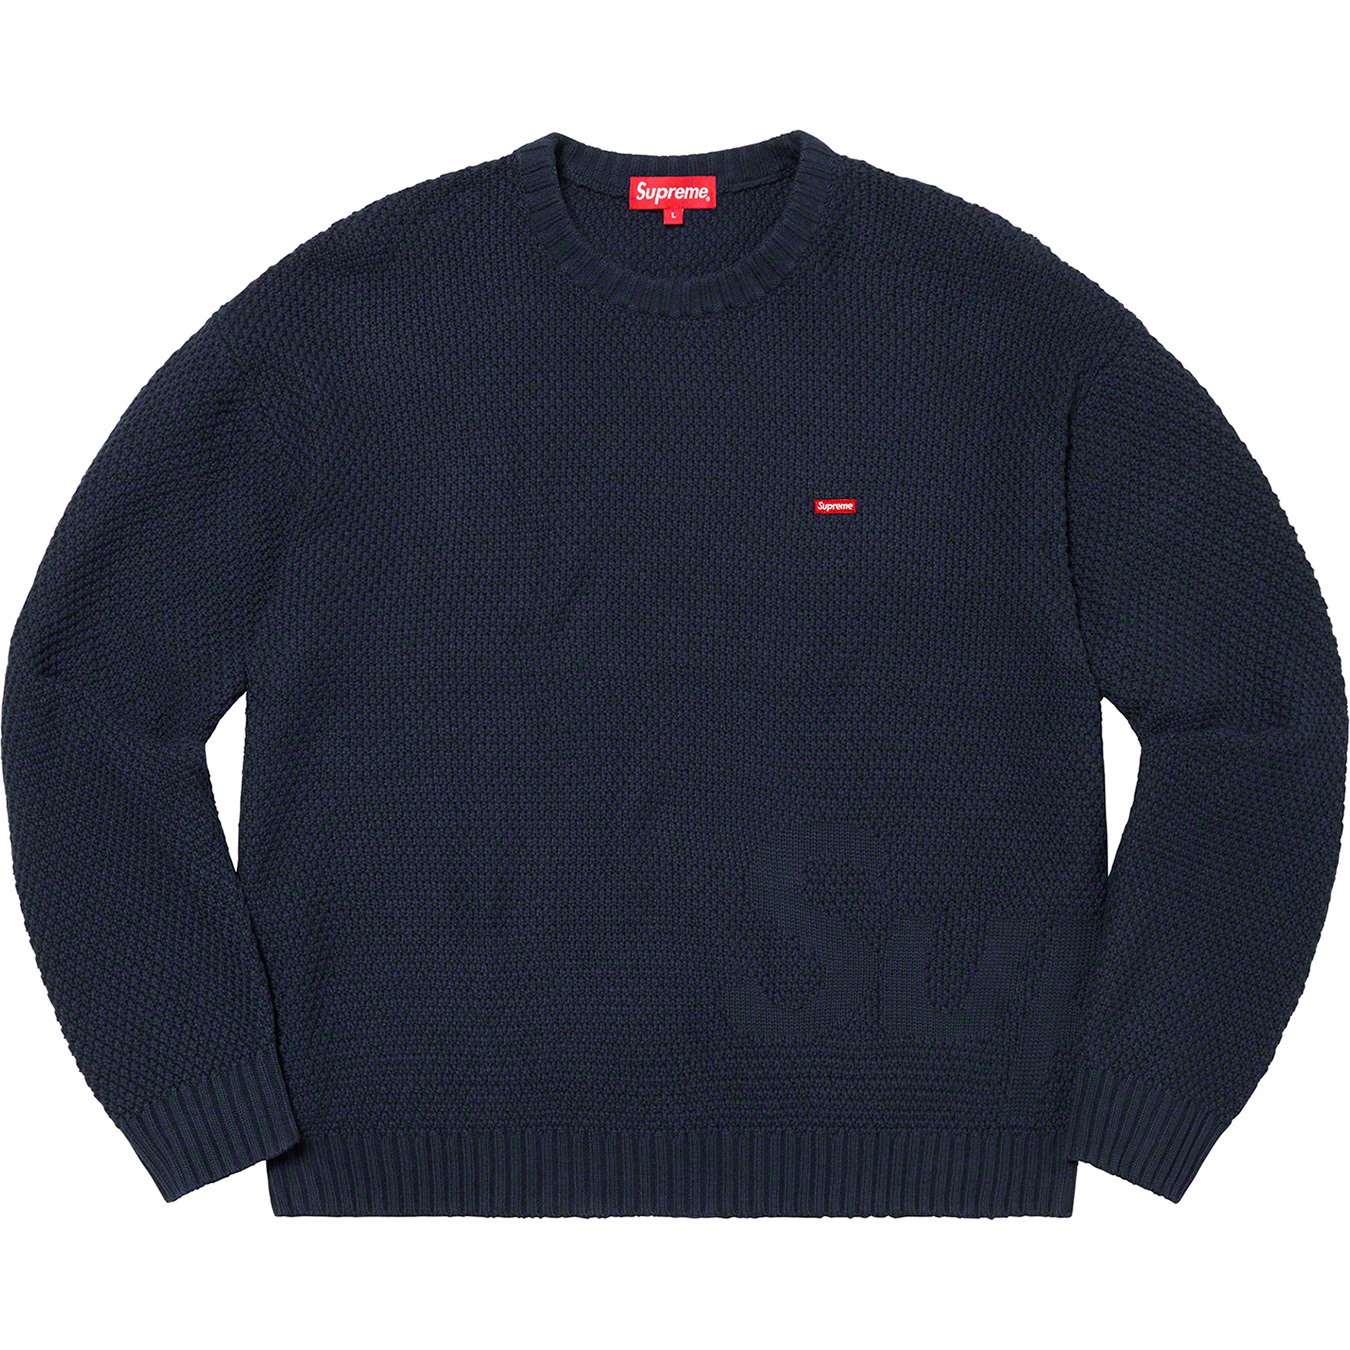 Supreme Textured Small Box Sweater